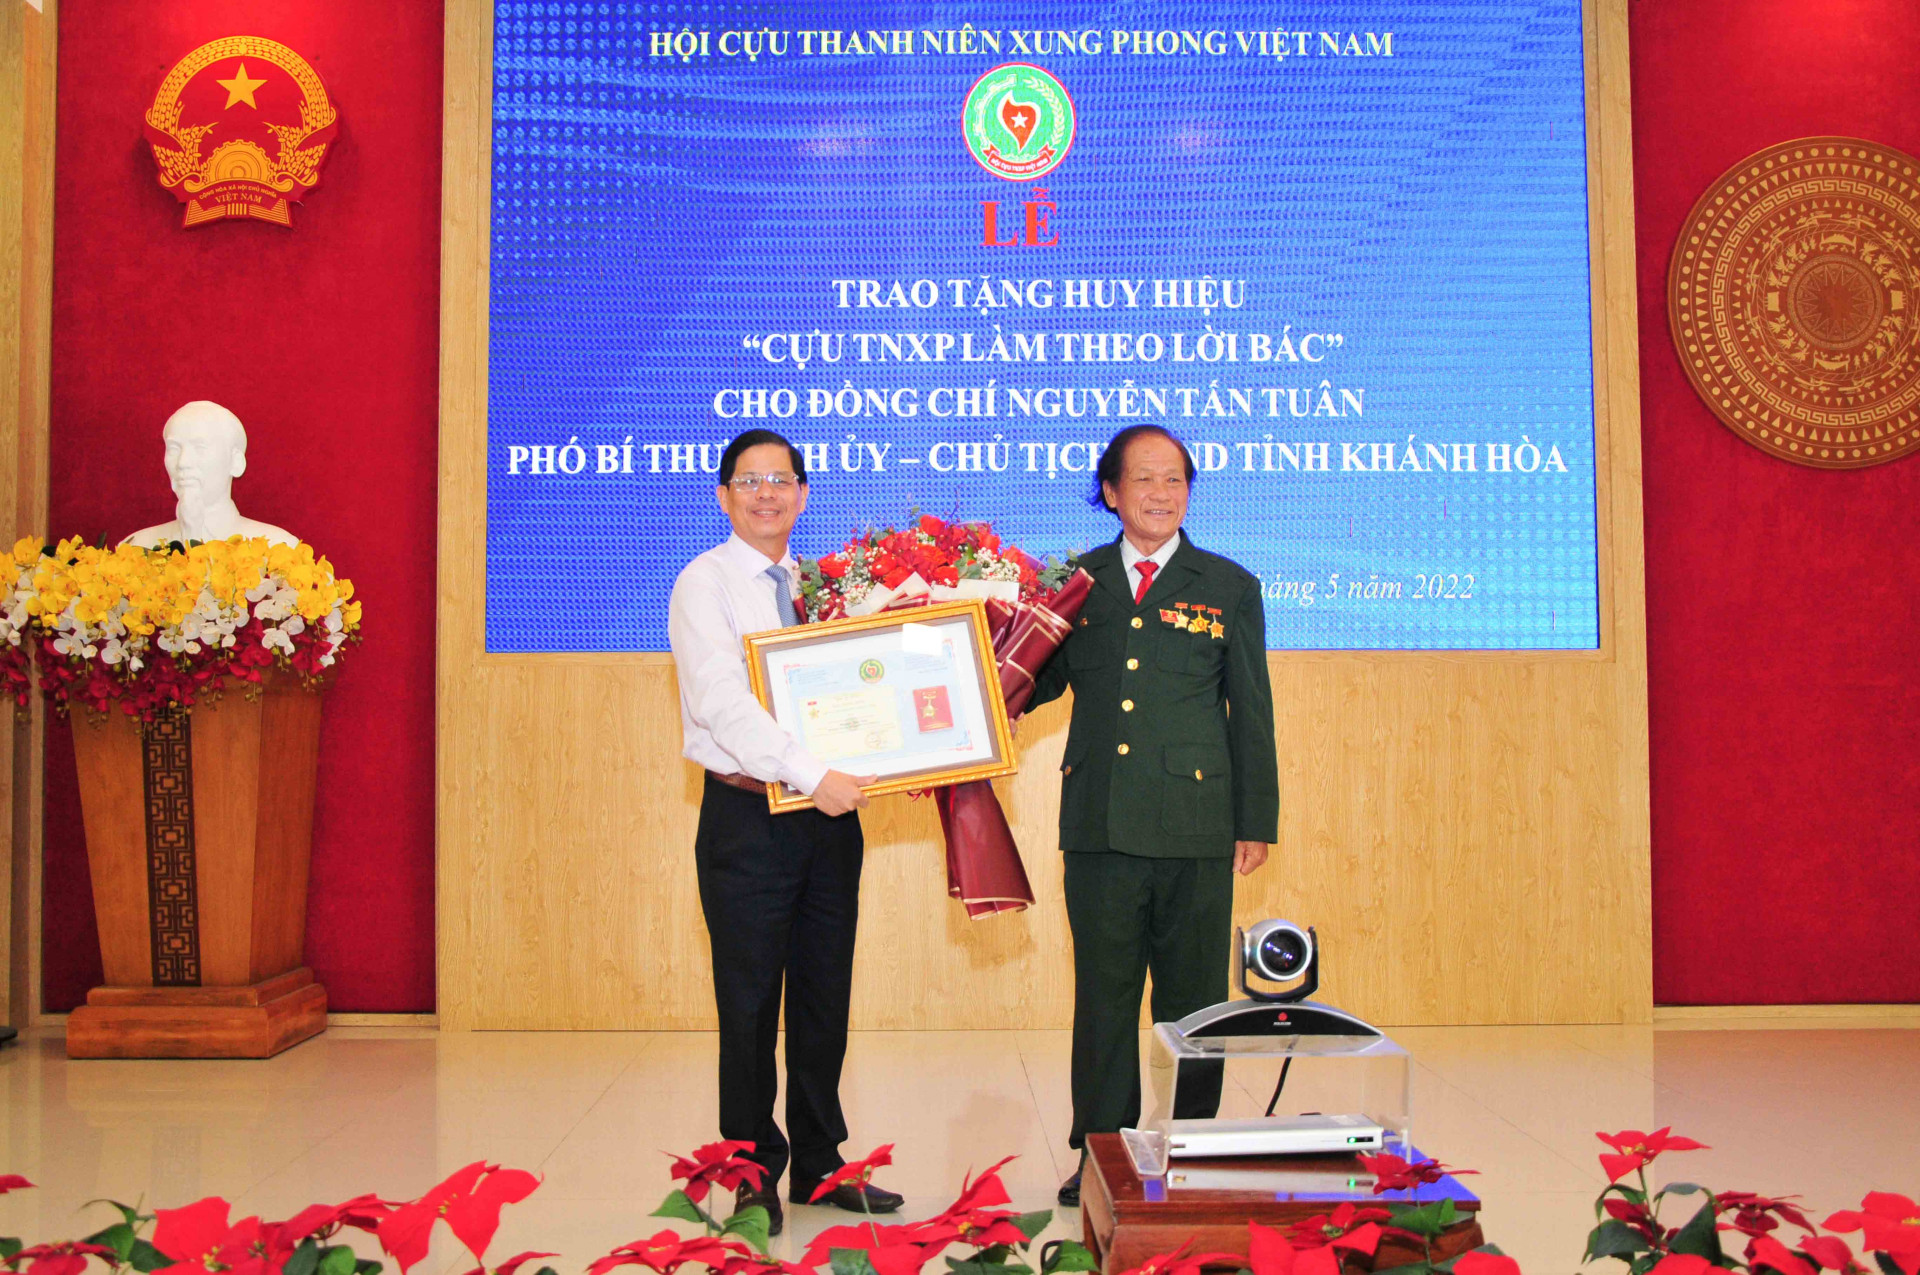 Đồng chí Nguyễn Tấn Tuân nhận huy hiệu “Cựu thanh niên xung phong làm theo lời Bác”